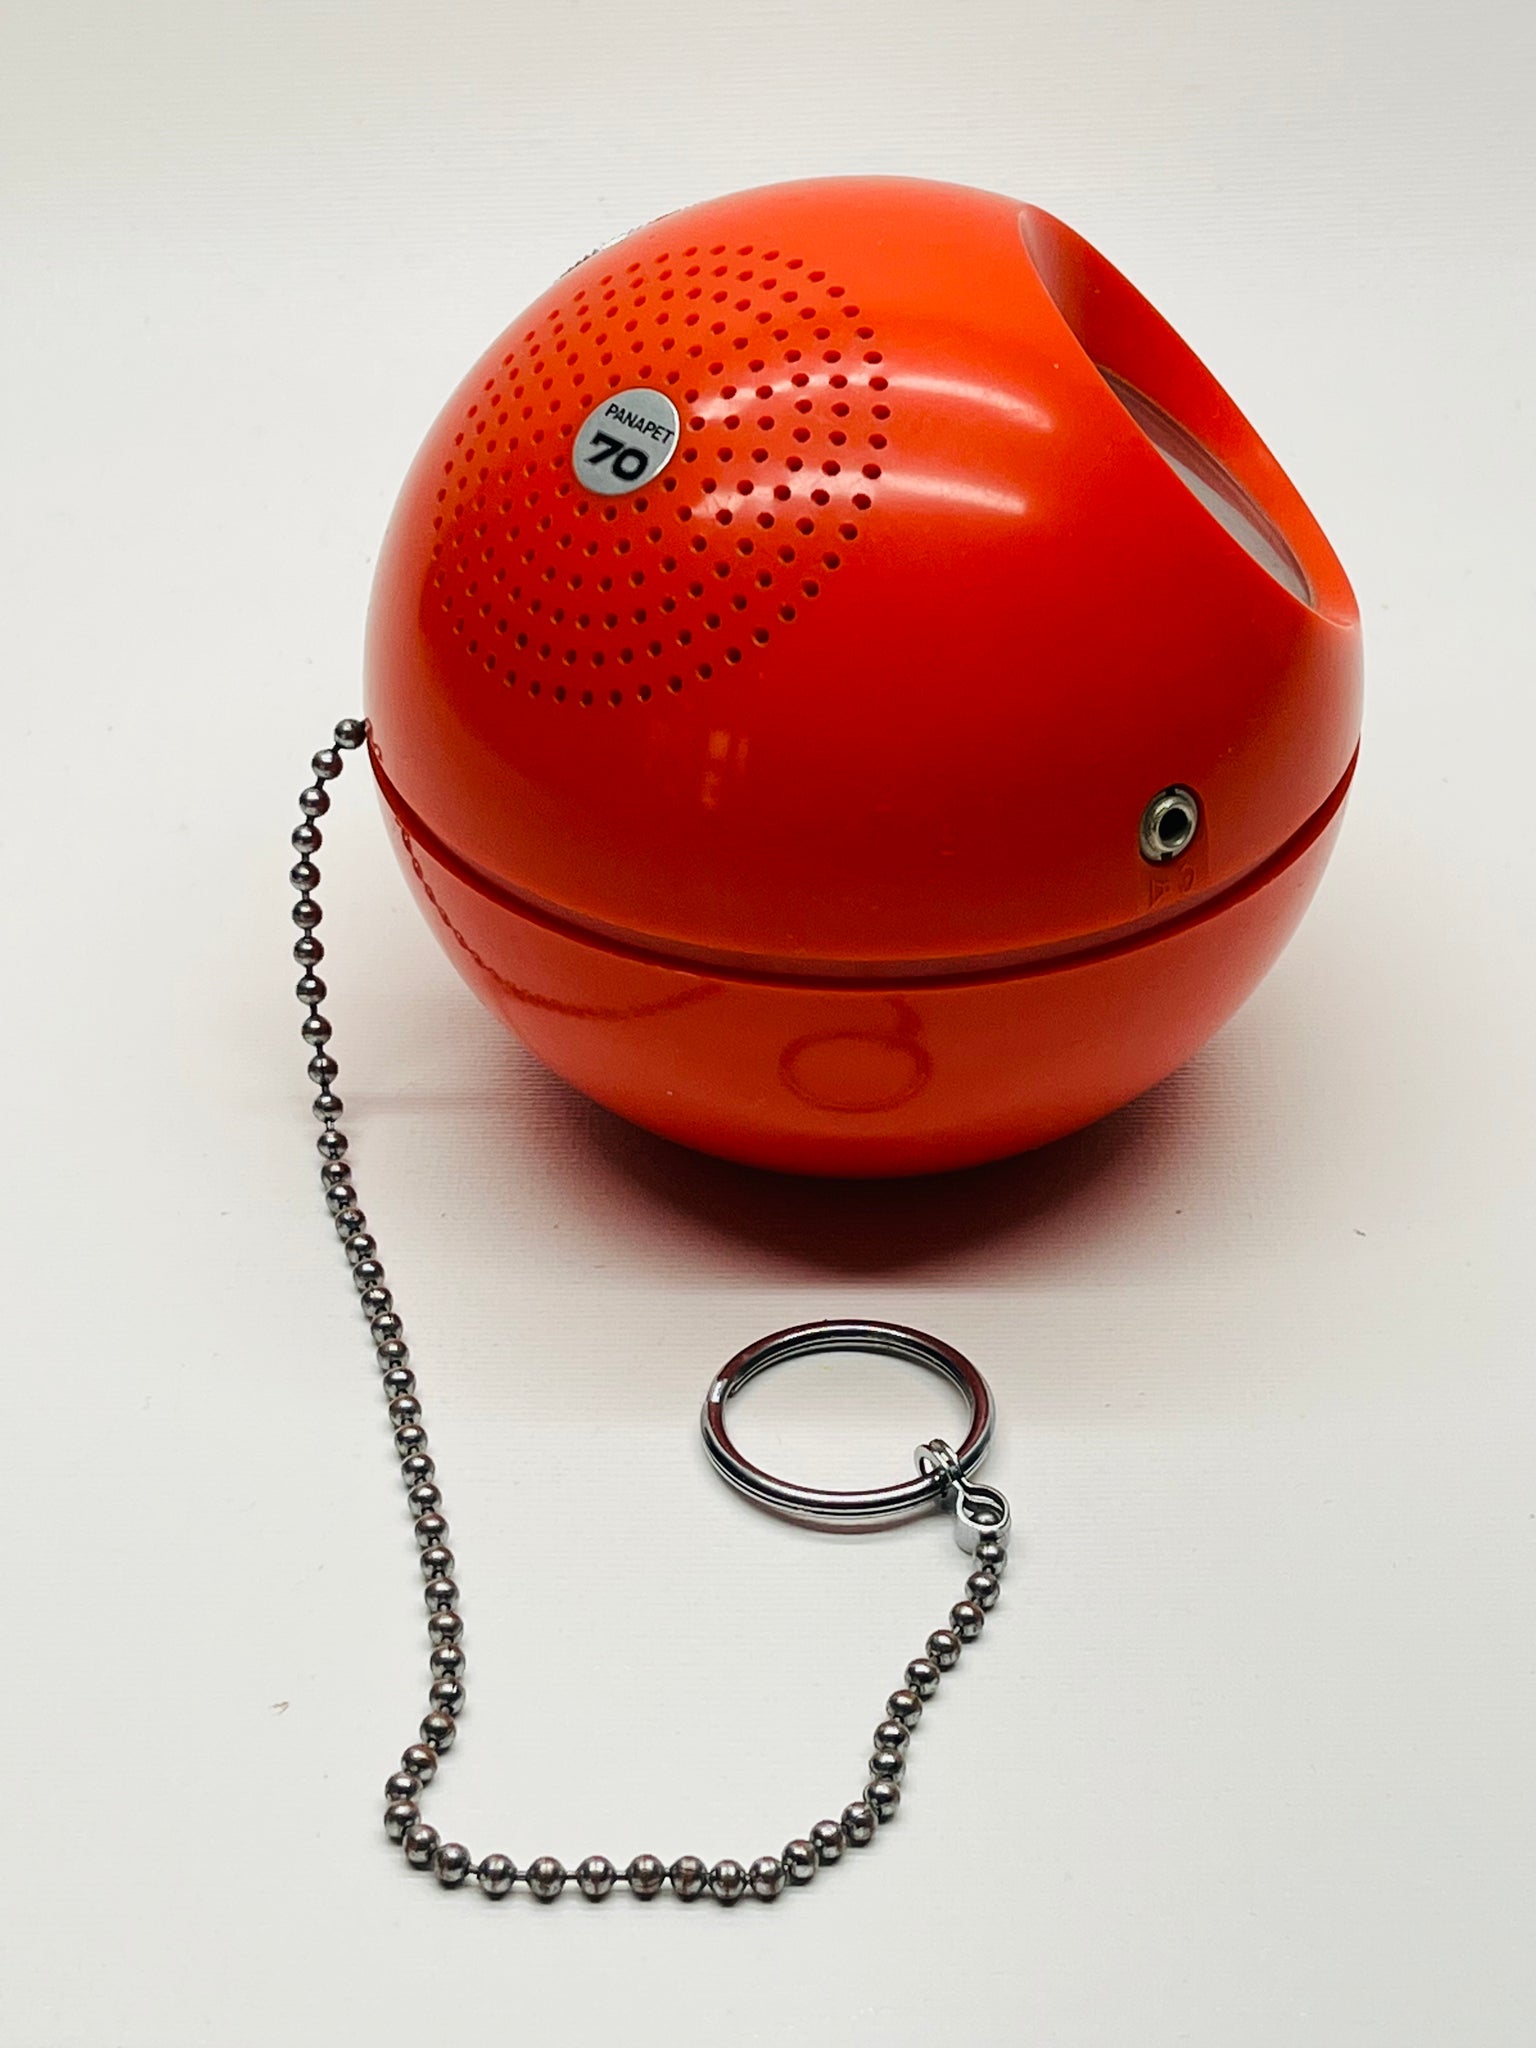 Panasonic Red Ball Radio